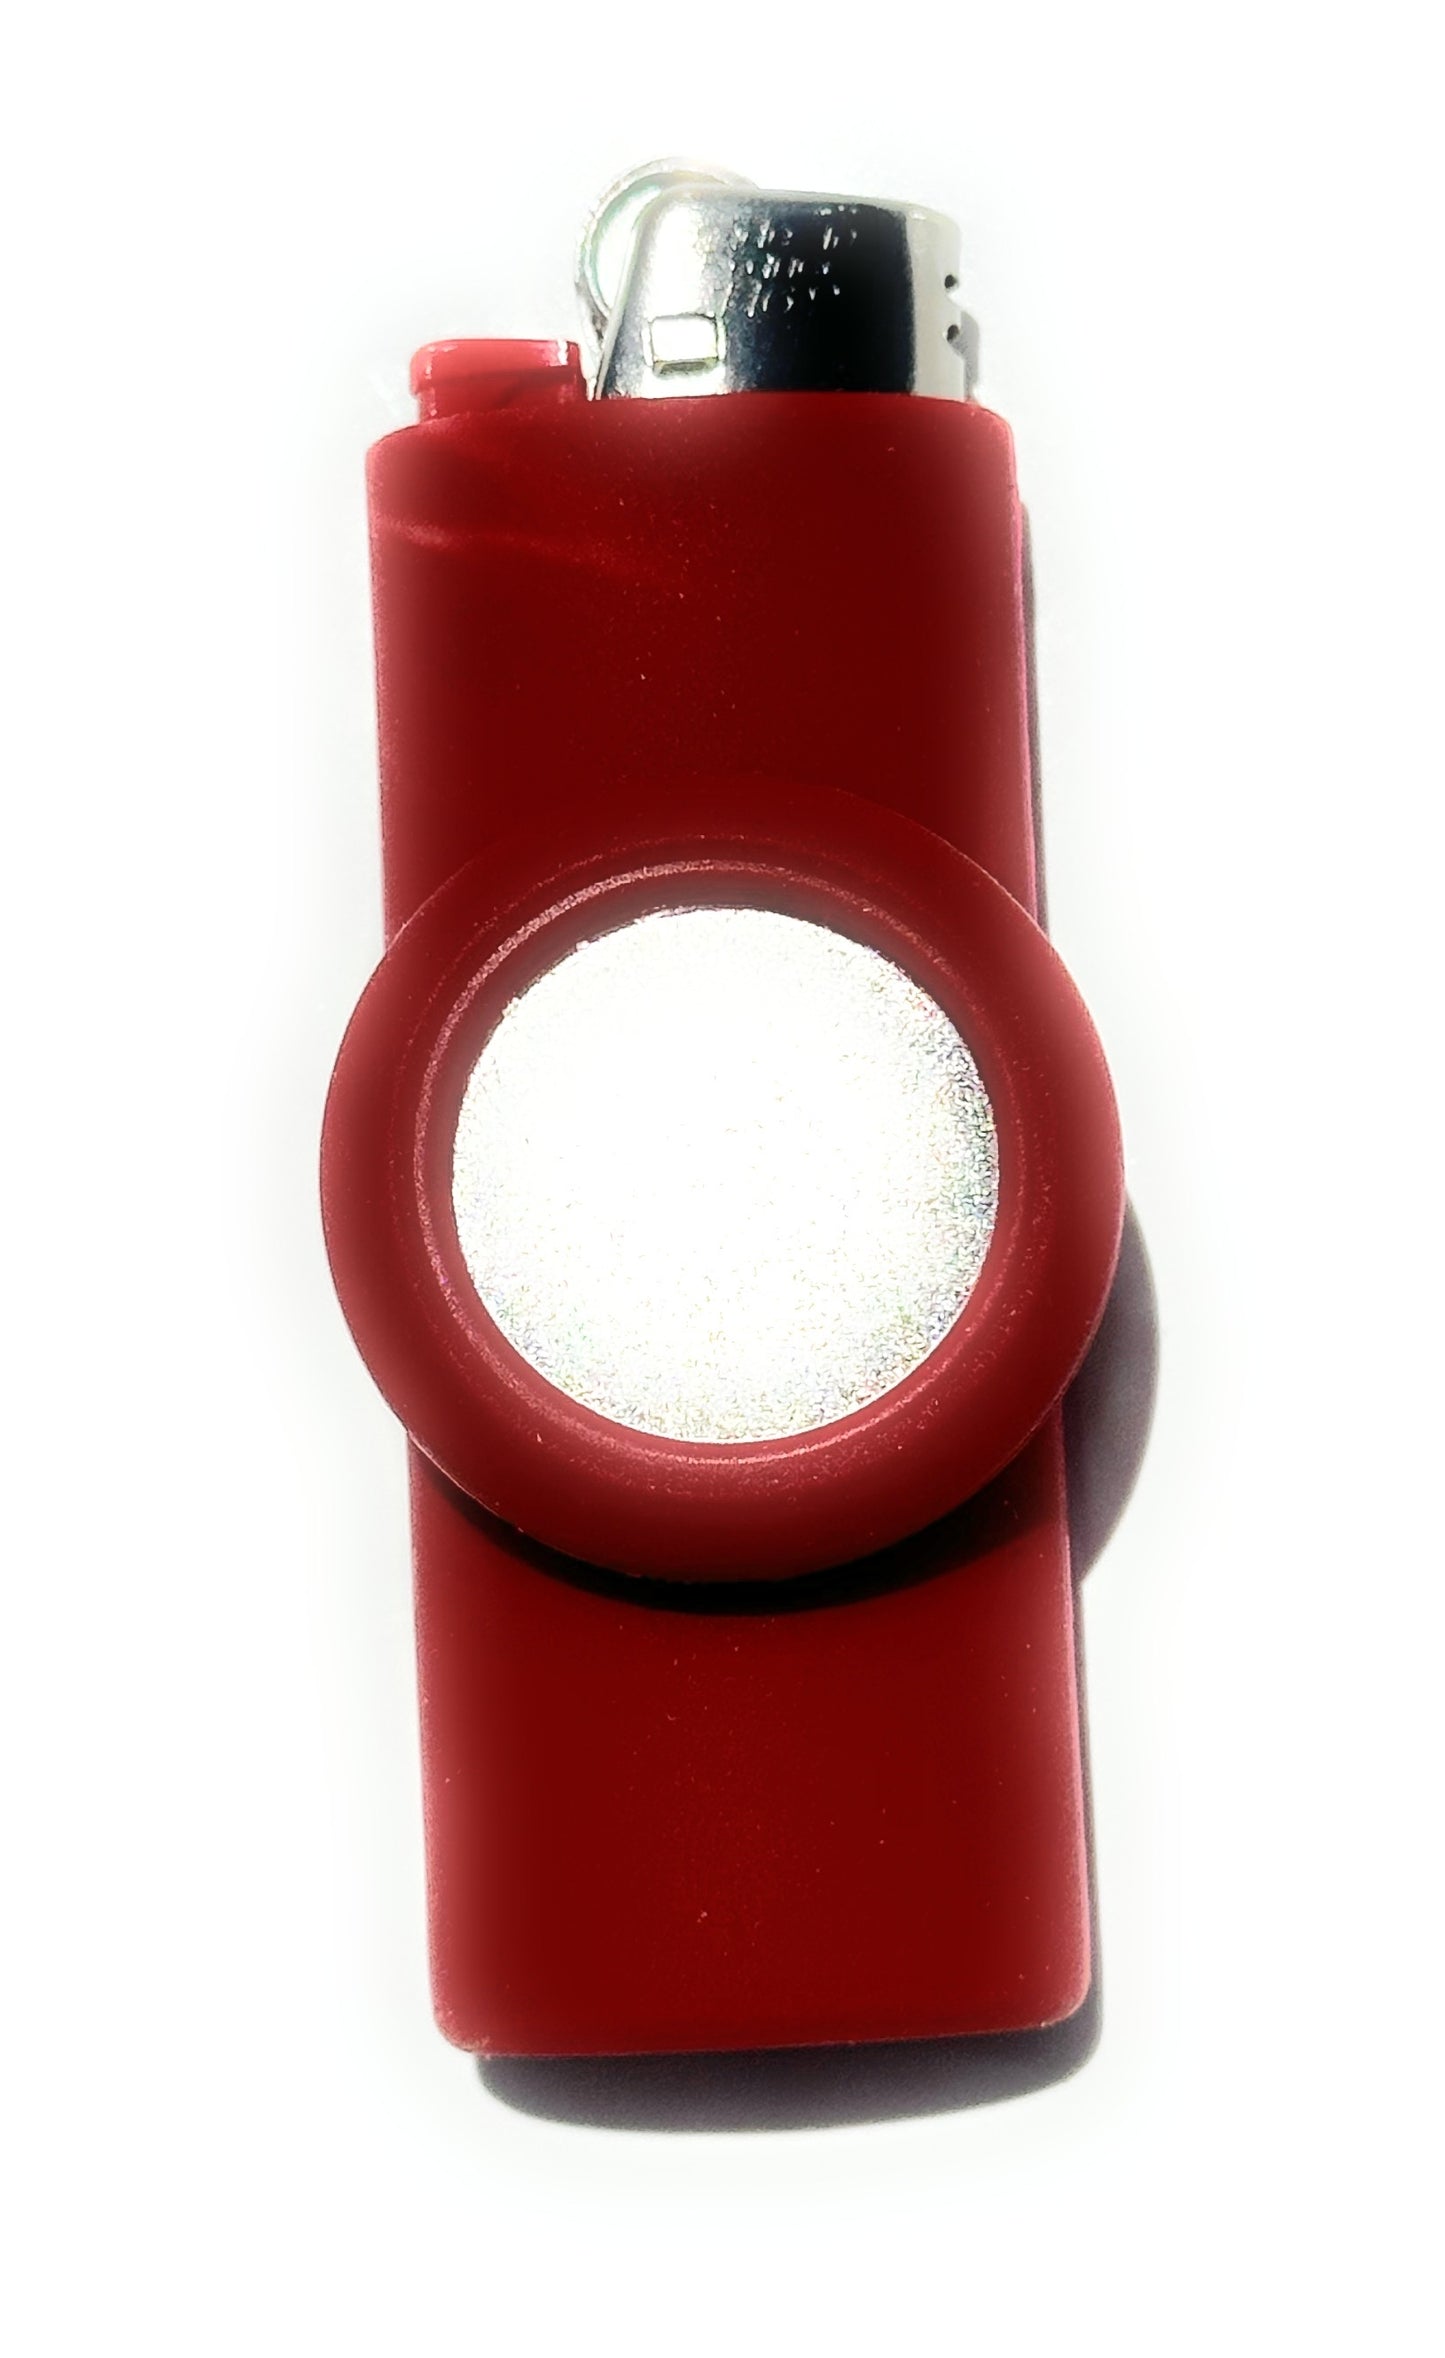 Magnetic Lighter Holder - Includes Magnet - Lighter Not Included